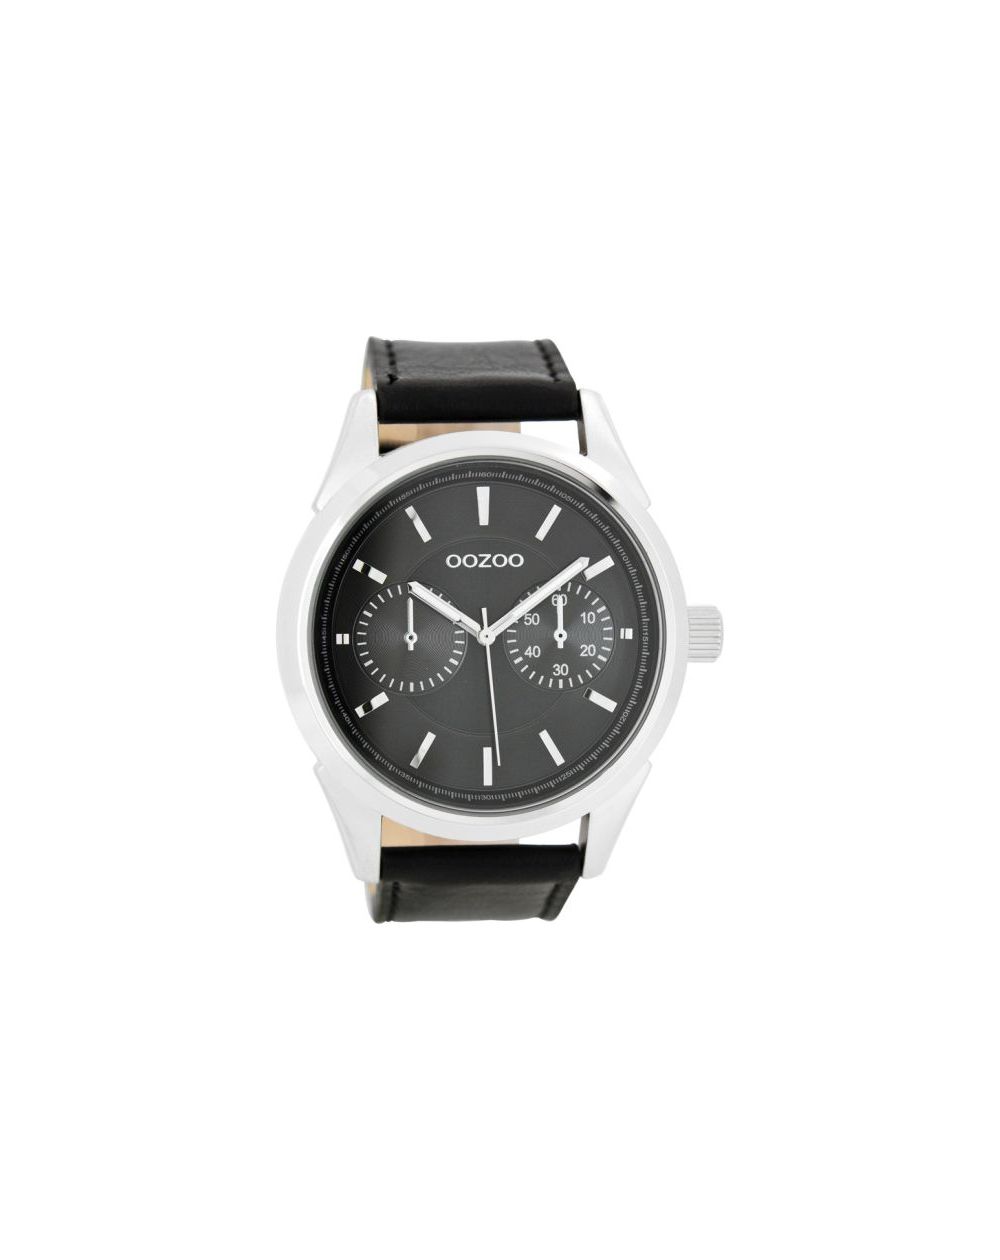 Oozoo montre/watch/horloge C8594